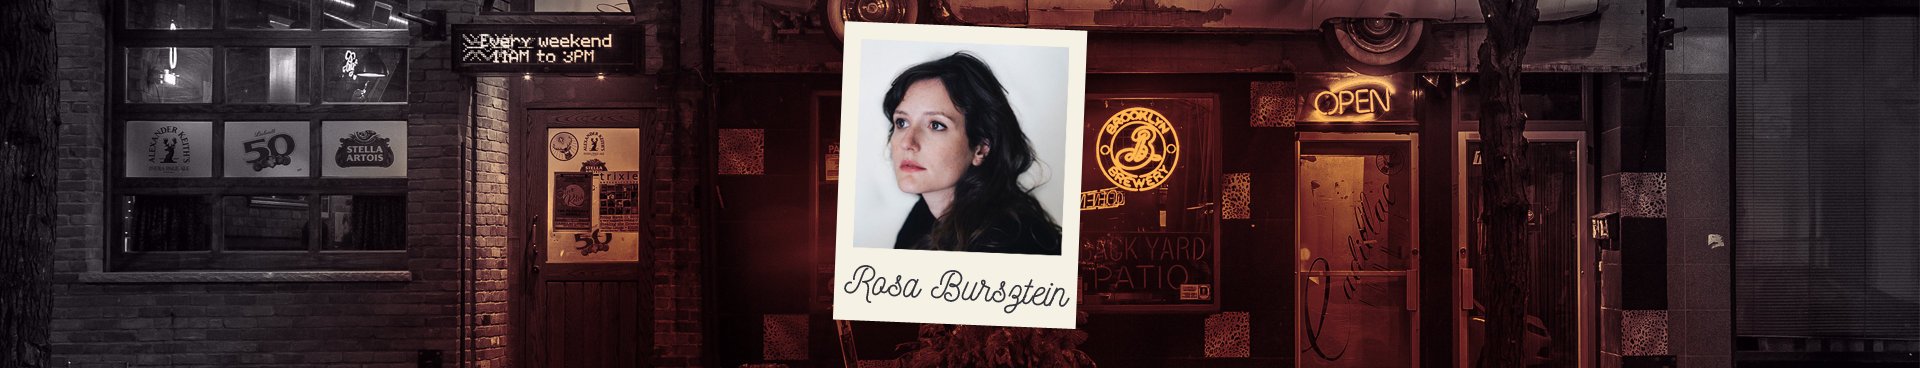 Portrait de Rosa Bursztein, comédienne de stand-up